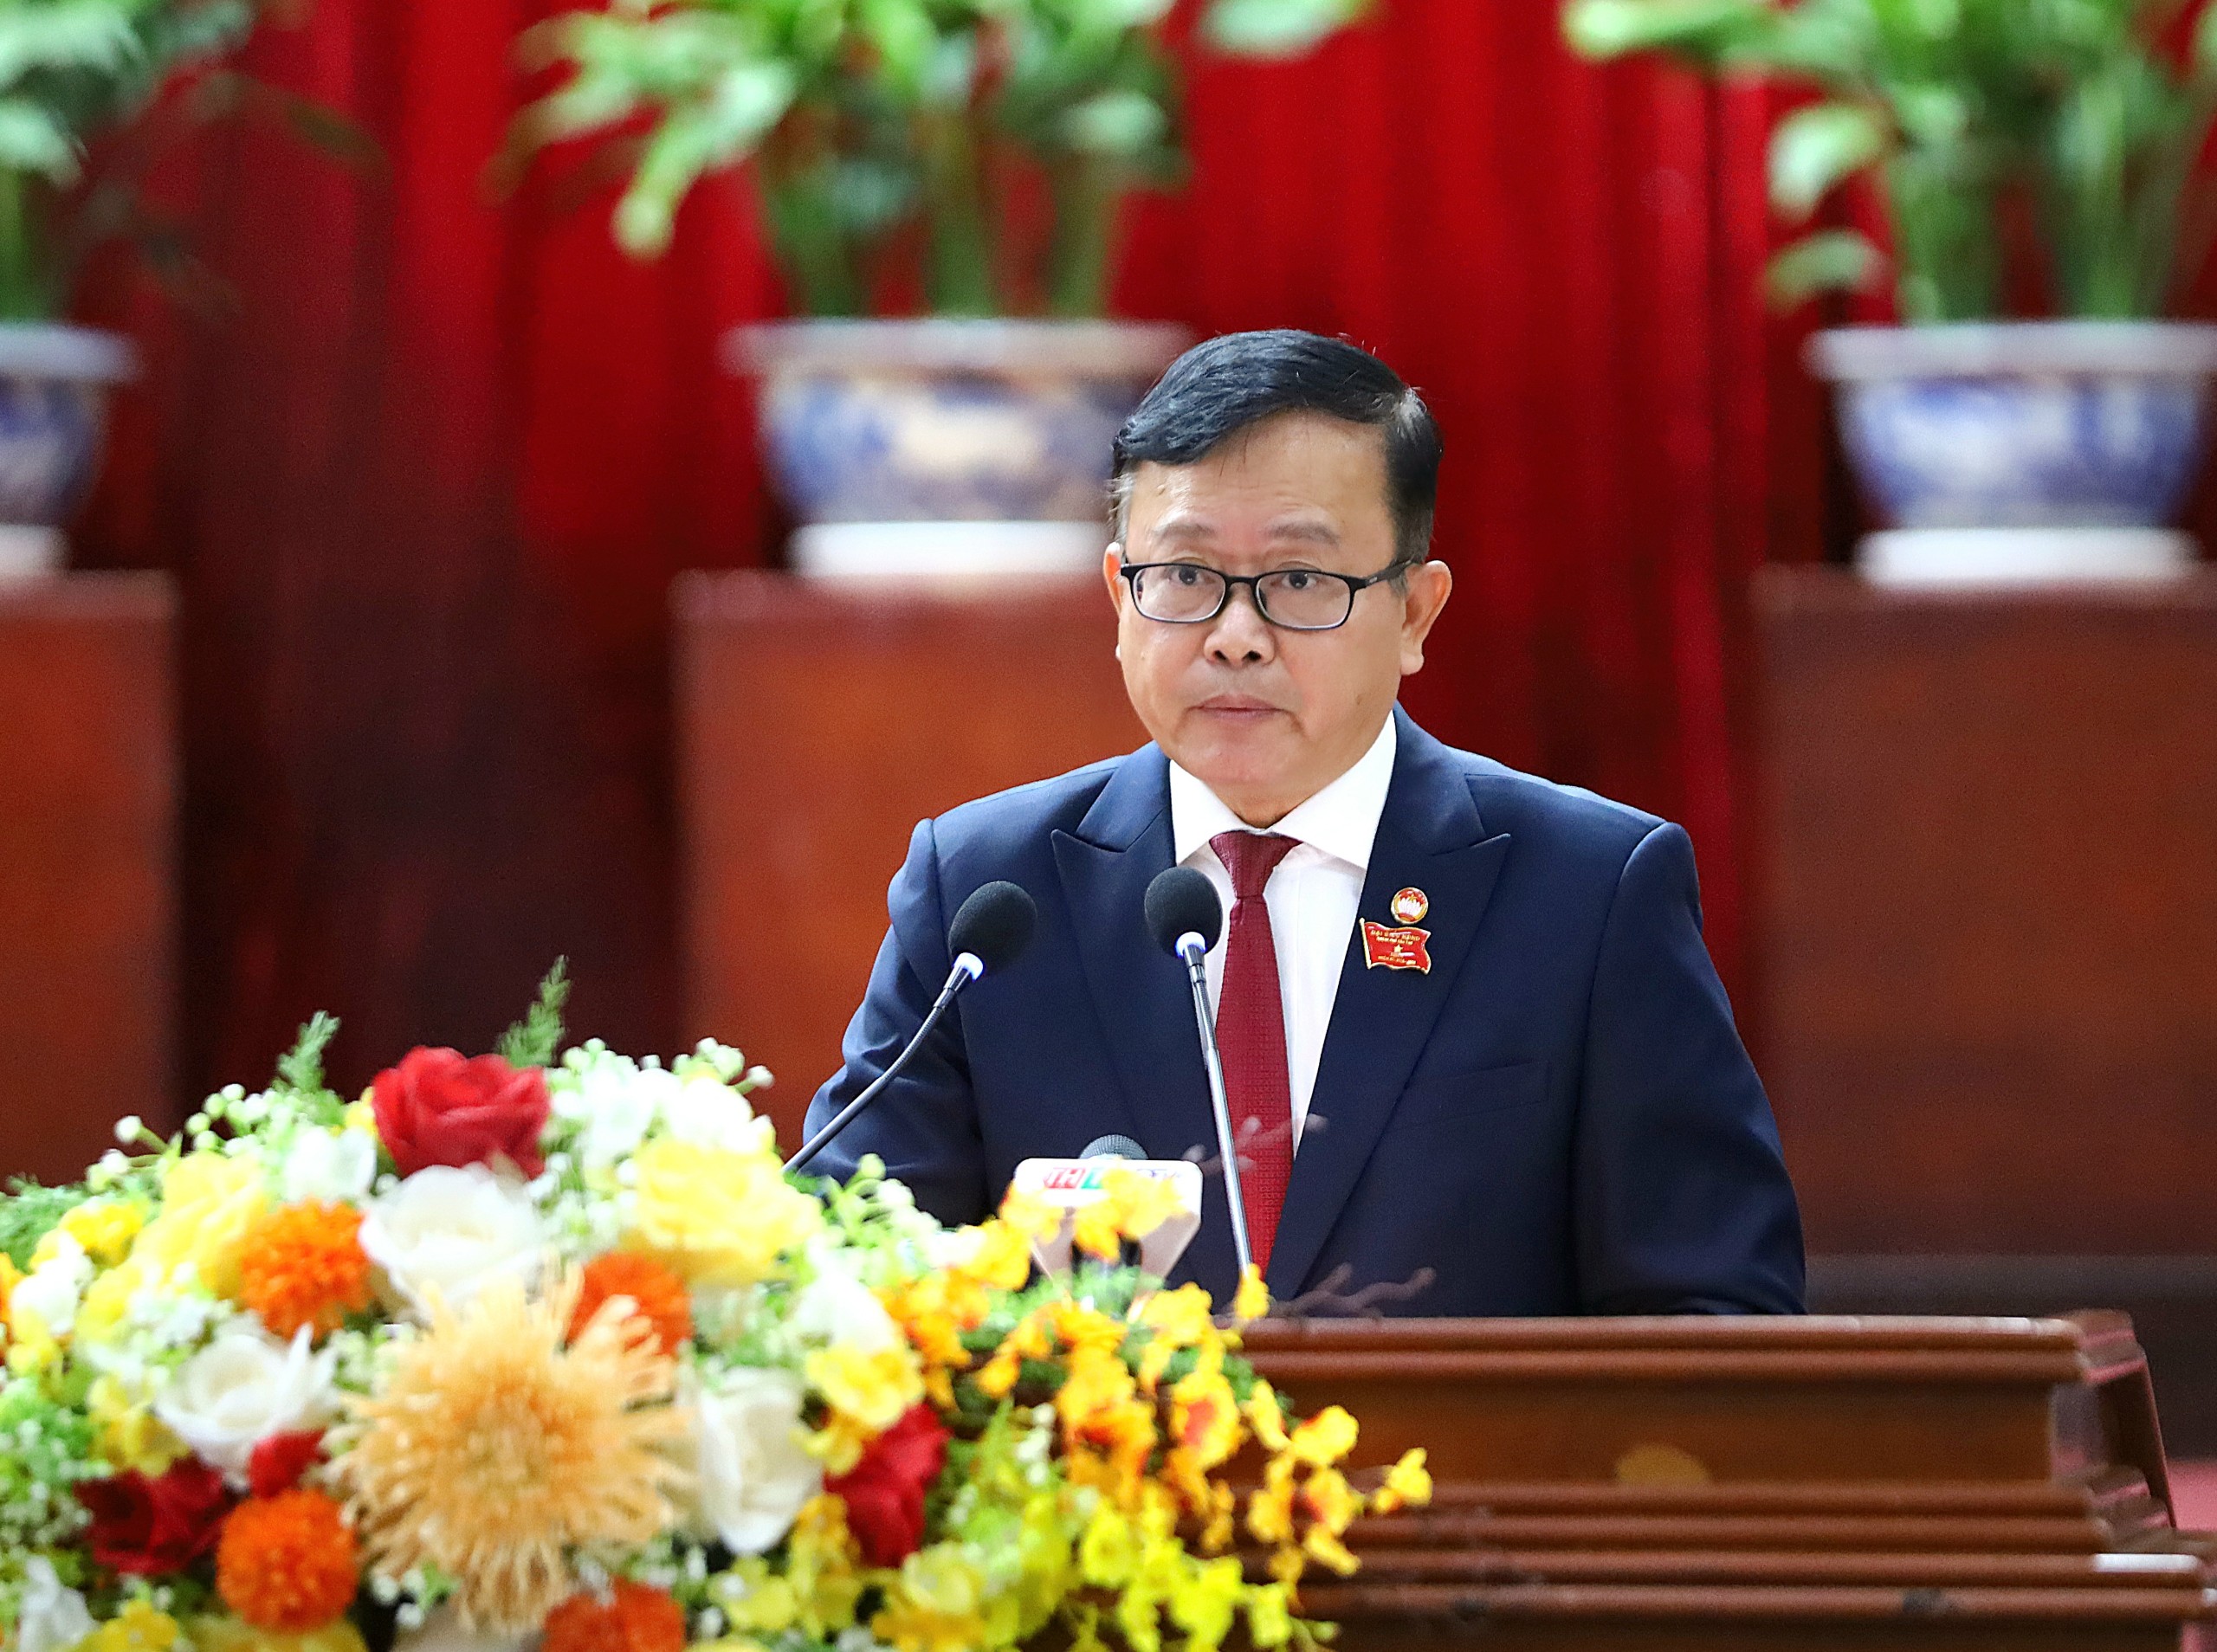 Ông Nguyễn Trung Nhân - Ủy viên BTV Thành ủy, Chủ tịch Ủy ban MTTQ Việt Nam TP. Cần Thơ phát biểu tham gia xây dựng chính quyền và những đề xuất kiến nghị.